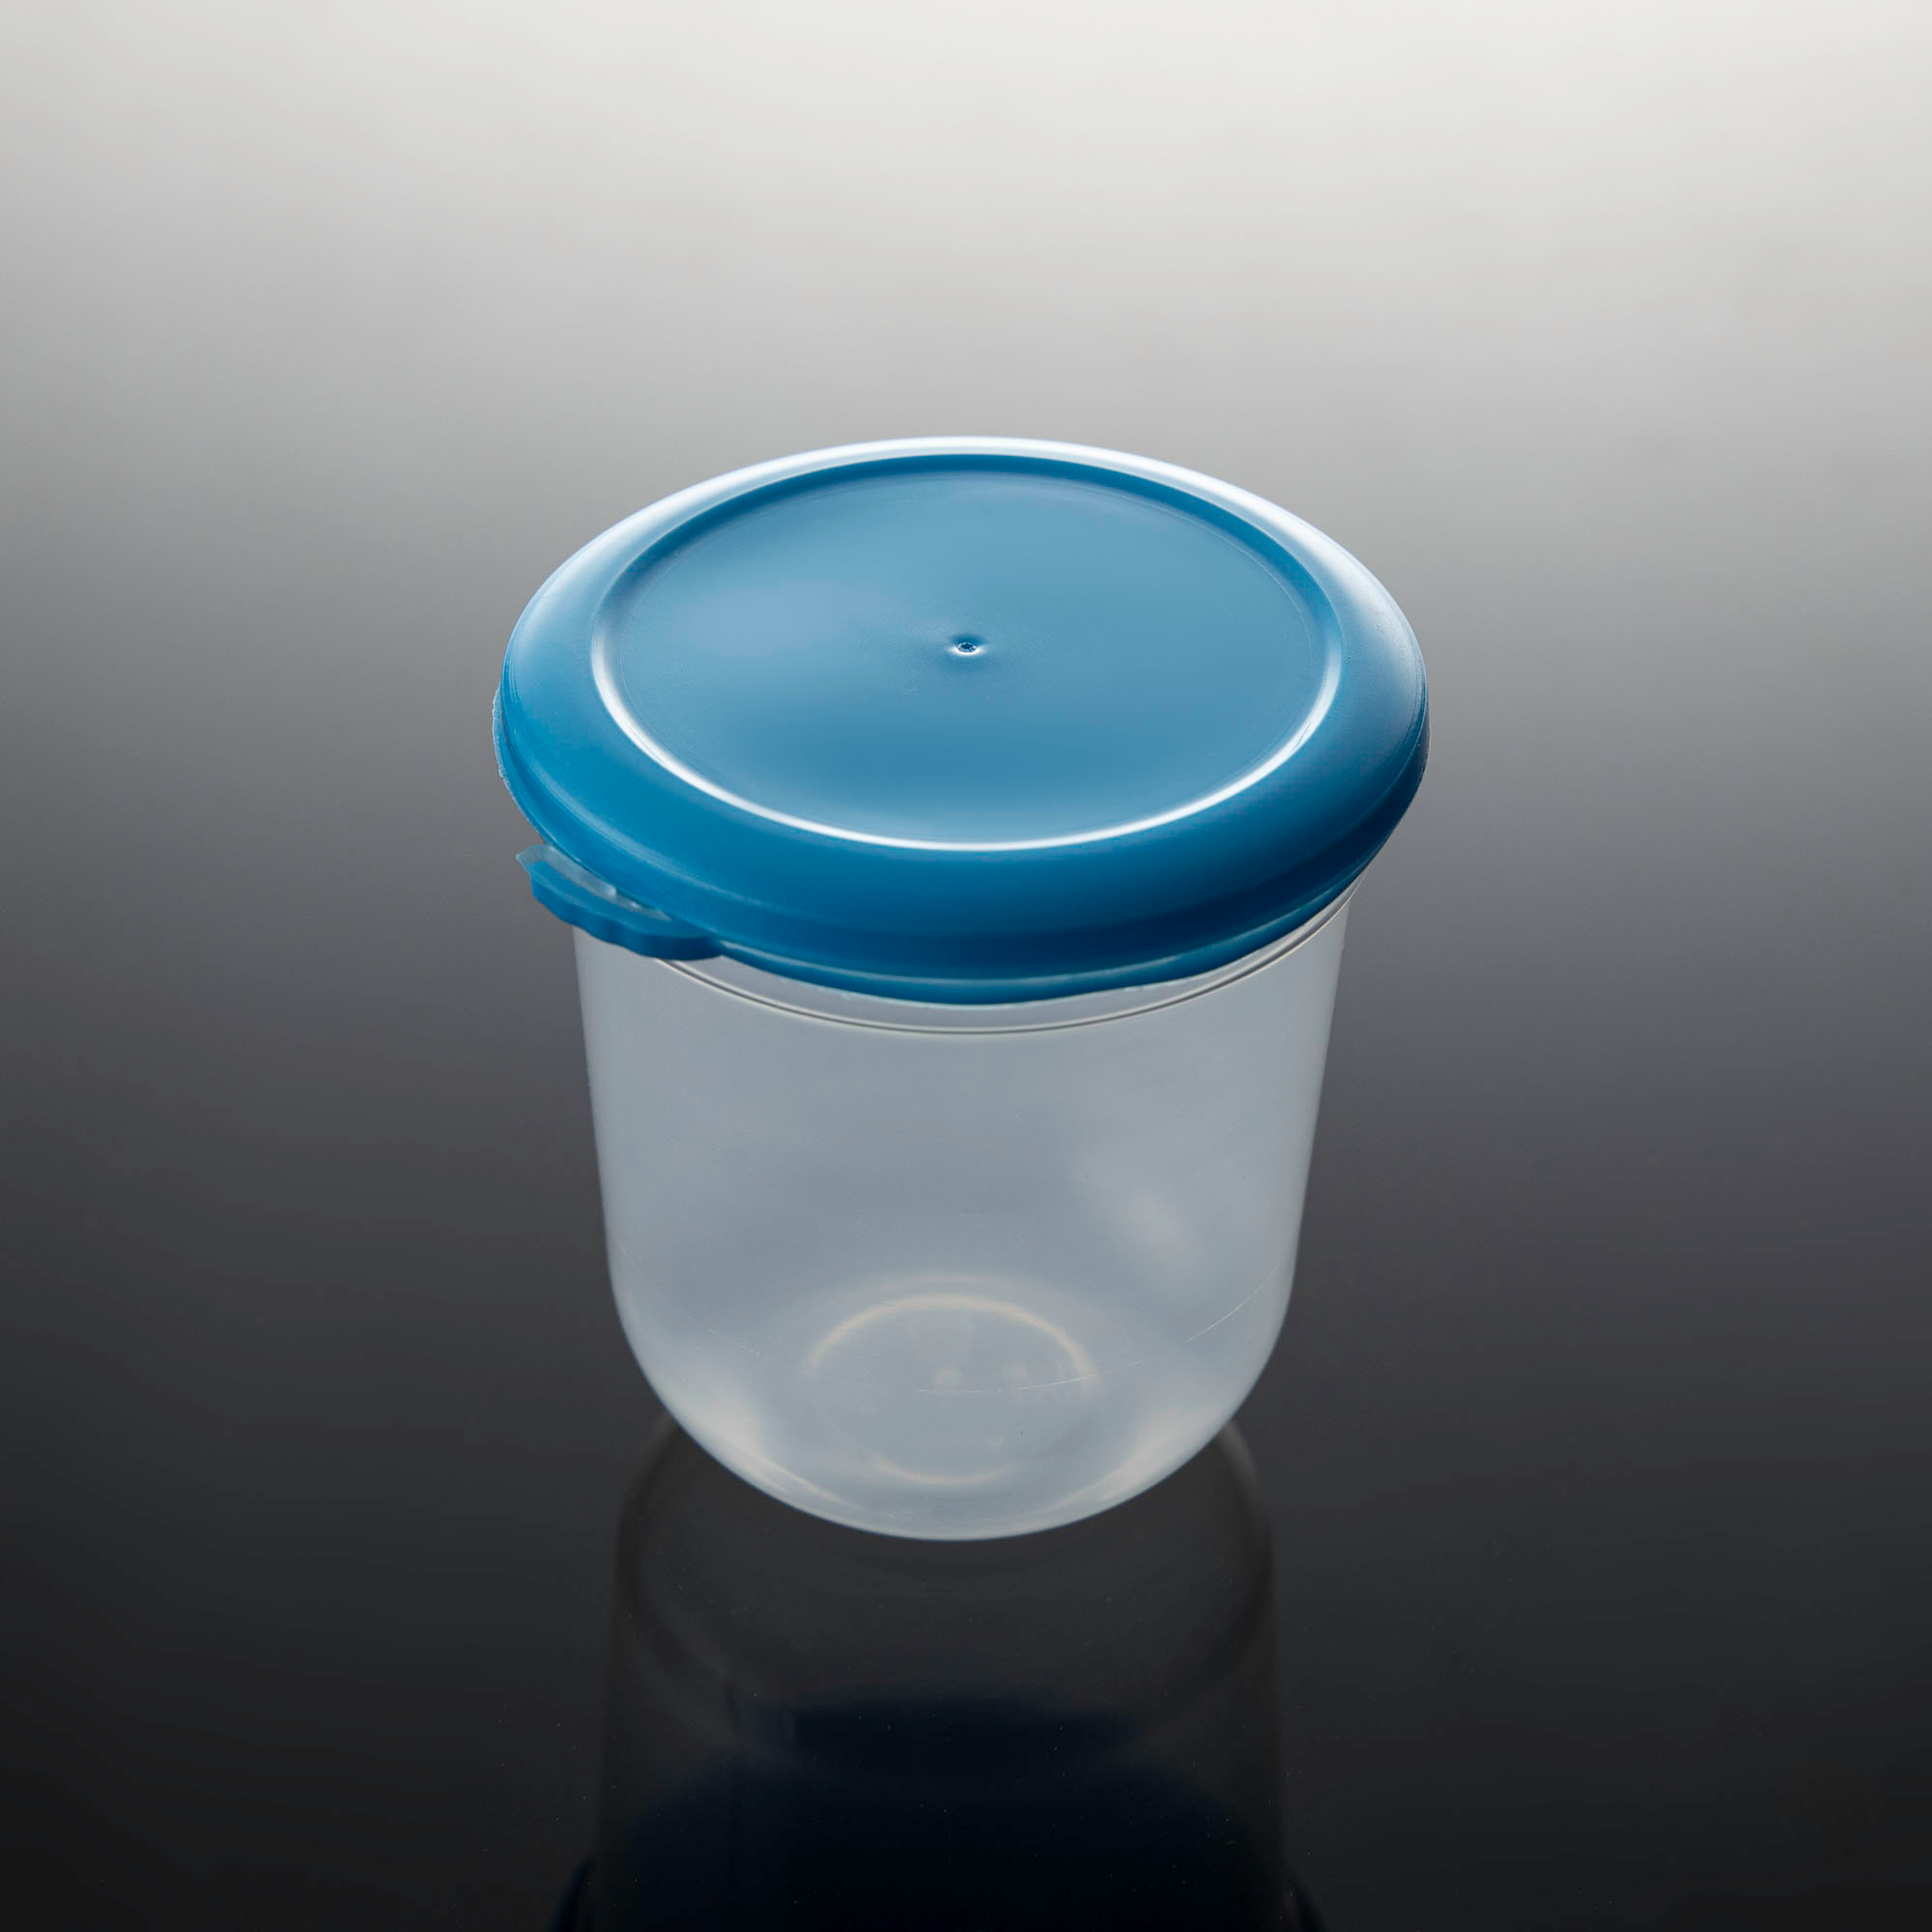 ถ้วยพลาสติก ทรงแคปซูล พร้อมฝาสีฟ้า ขนาด 6 oz. (20ชุด/แพ็ค)